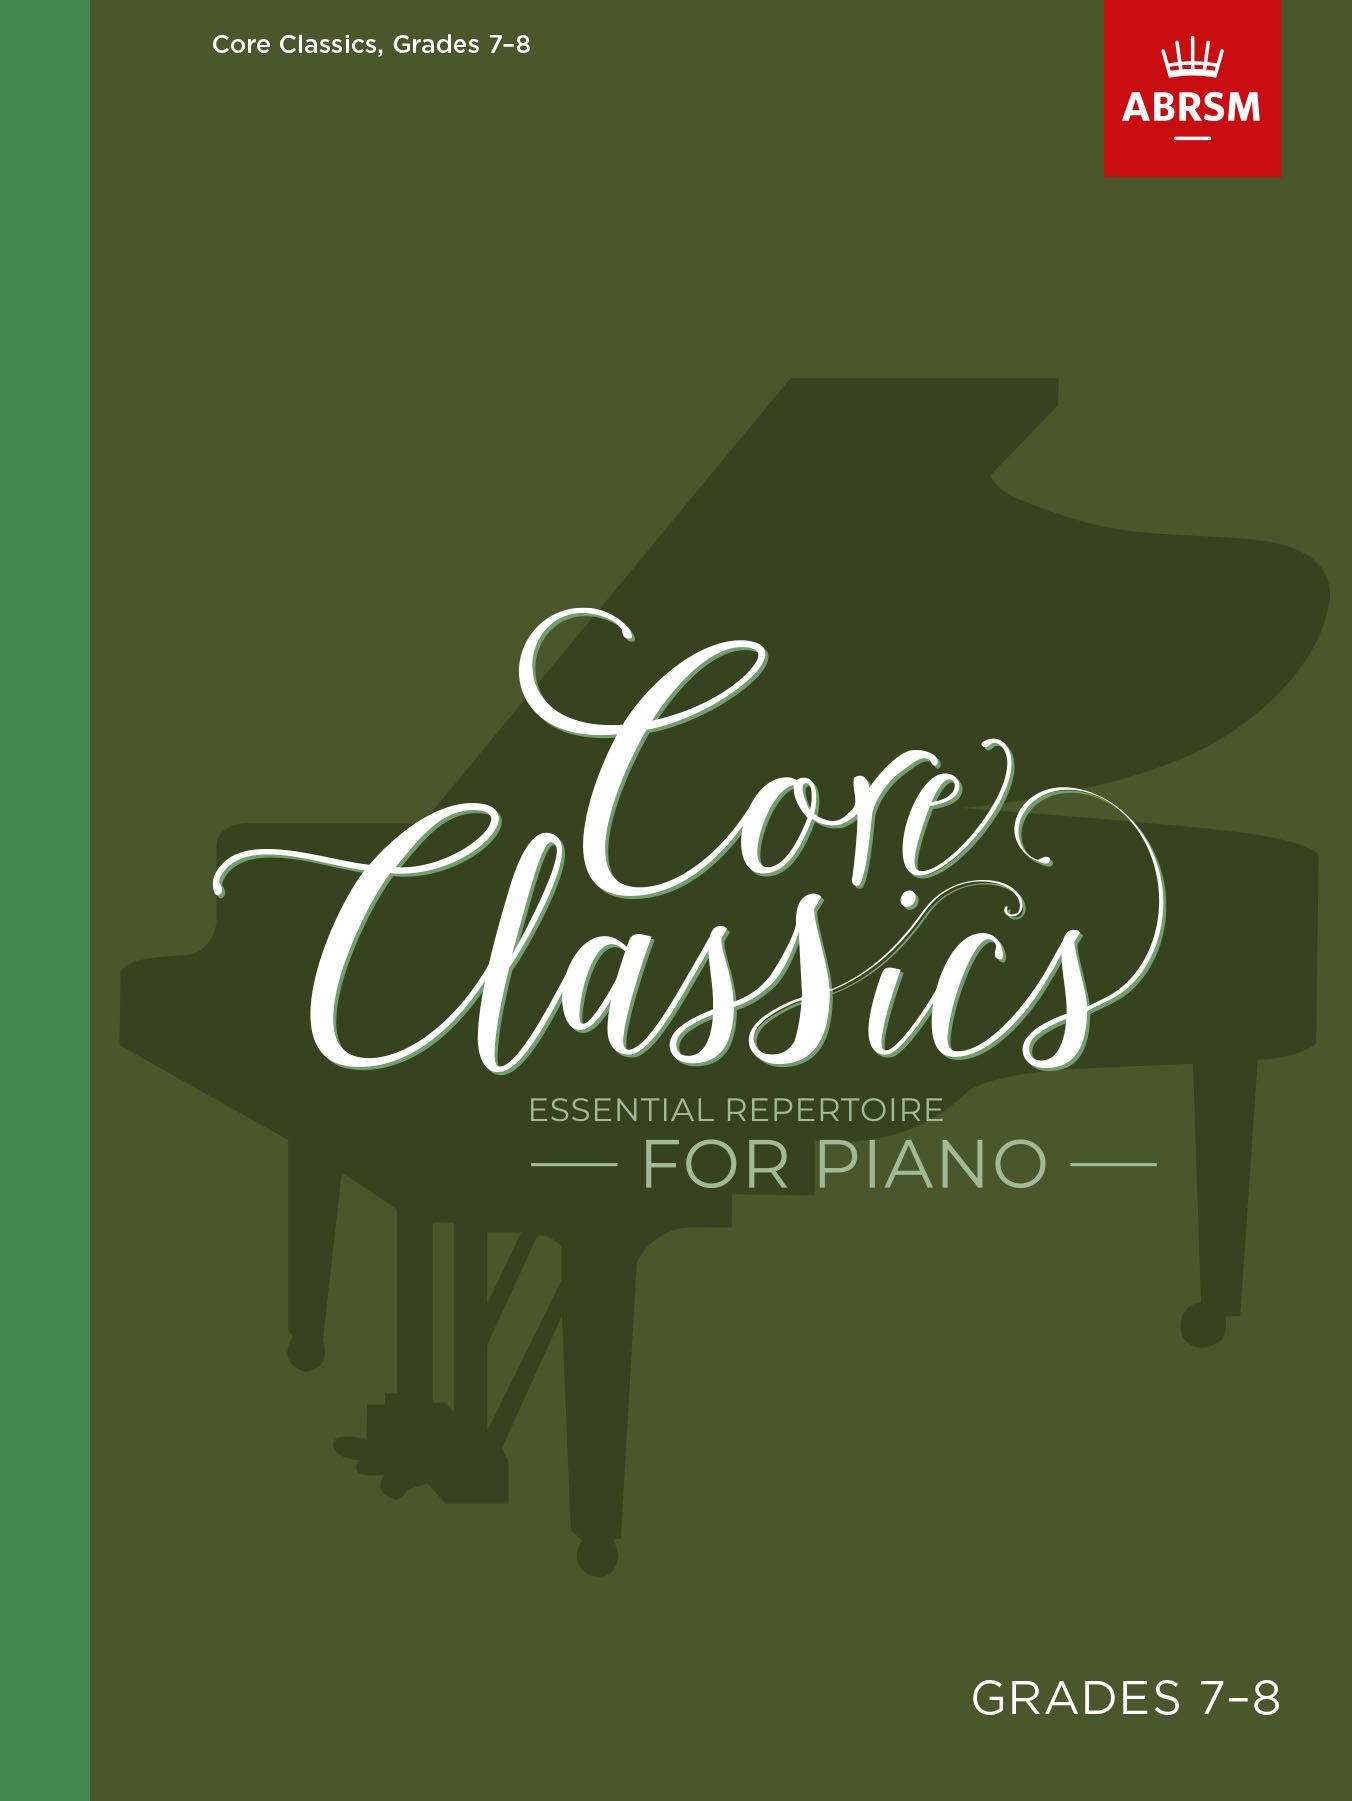 Core Classics - Grades 7-8: Essential Repertoire for Piano